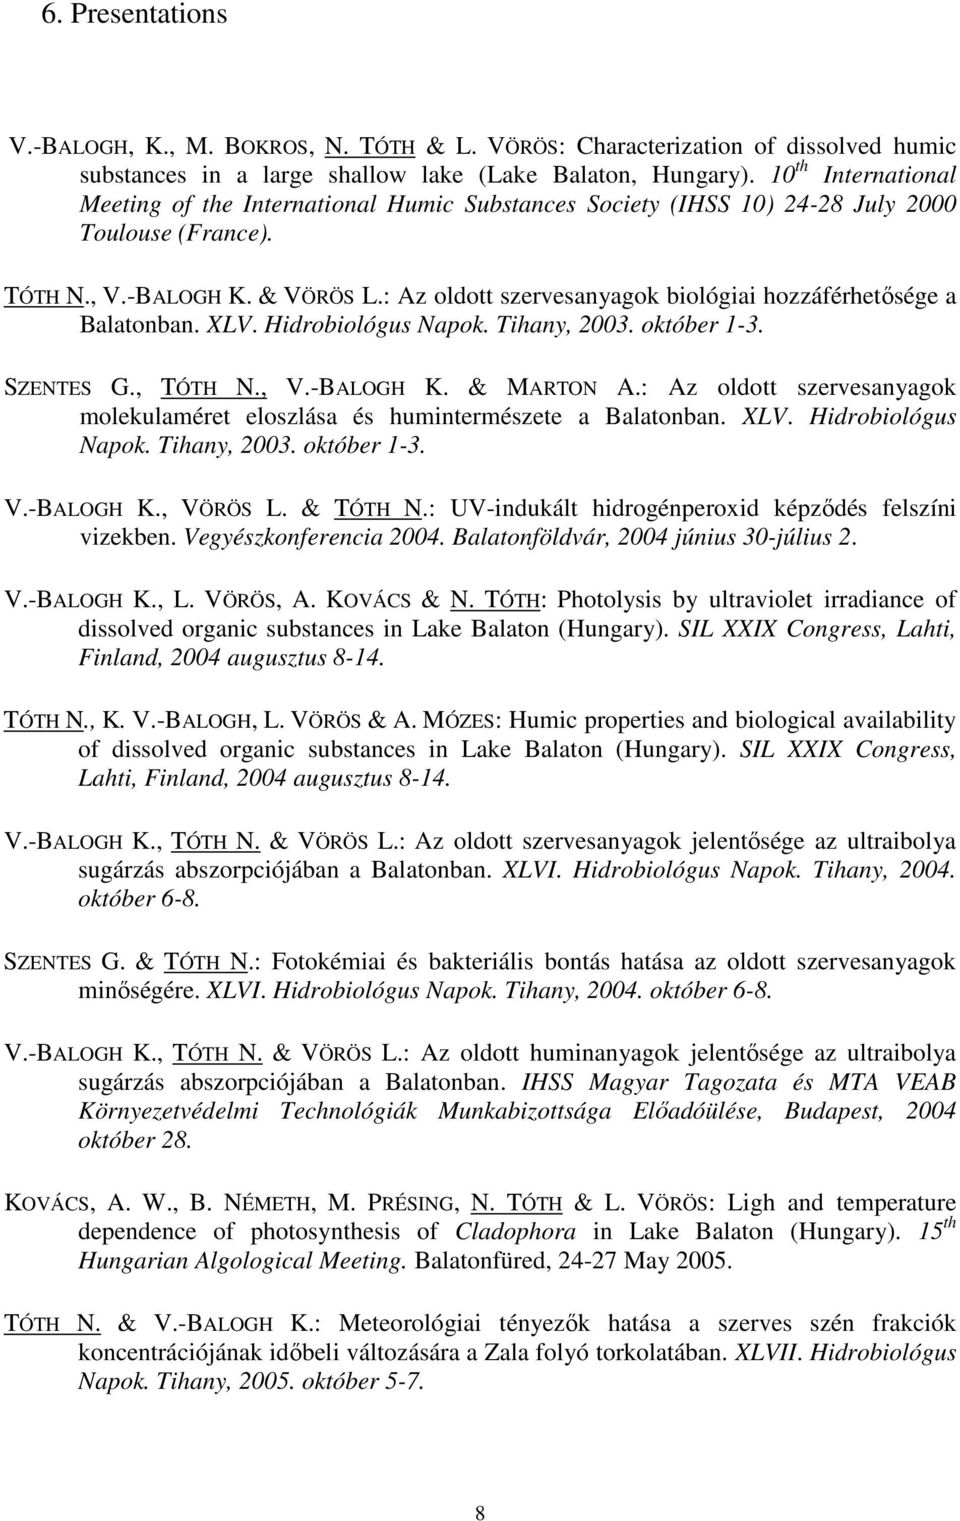 : Az oldott szervesanyagok biológiai hozzáférhetısége a Balatonban. XLV. Hidrobiológus Napok. Tihany, 2003. október 1-3. SZENTES G., TÓTH N., V.-BALOGH K. & MARTON A.